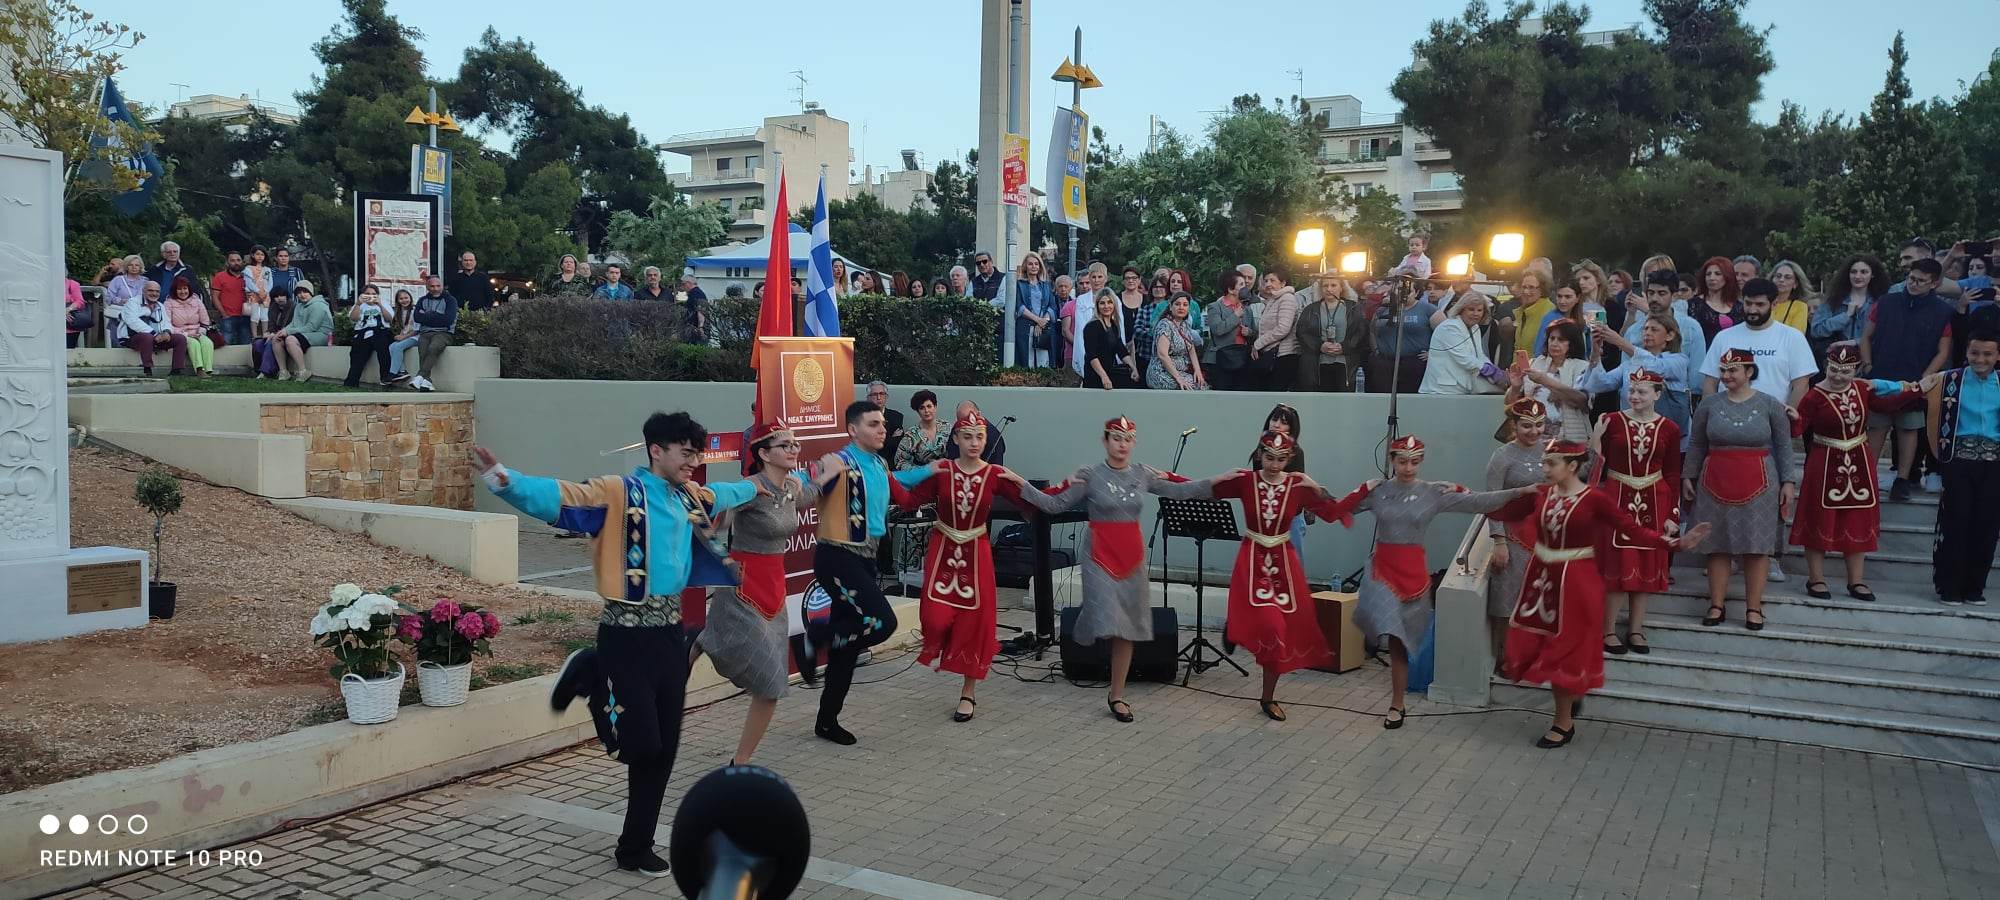 Έγιναν τα αποκαλυπτήρια του Μνημείου Ελληνοαρμενικής φιλίας  στην πλατεία Καρύλλου της Νέας Σμύρνης!